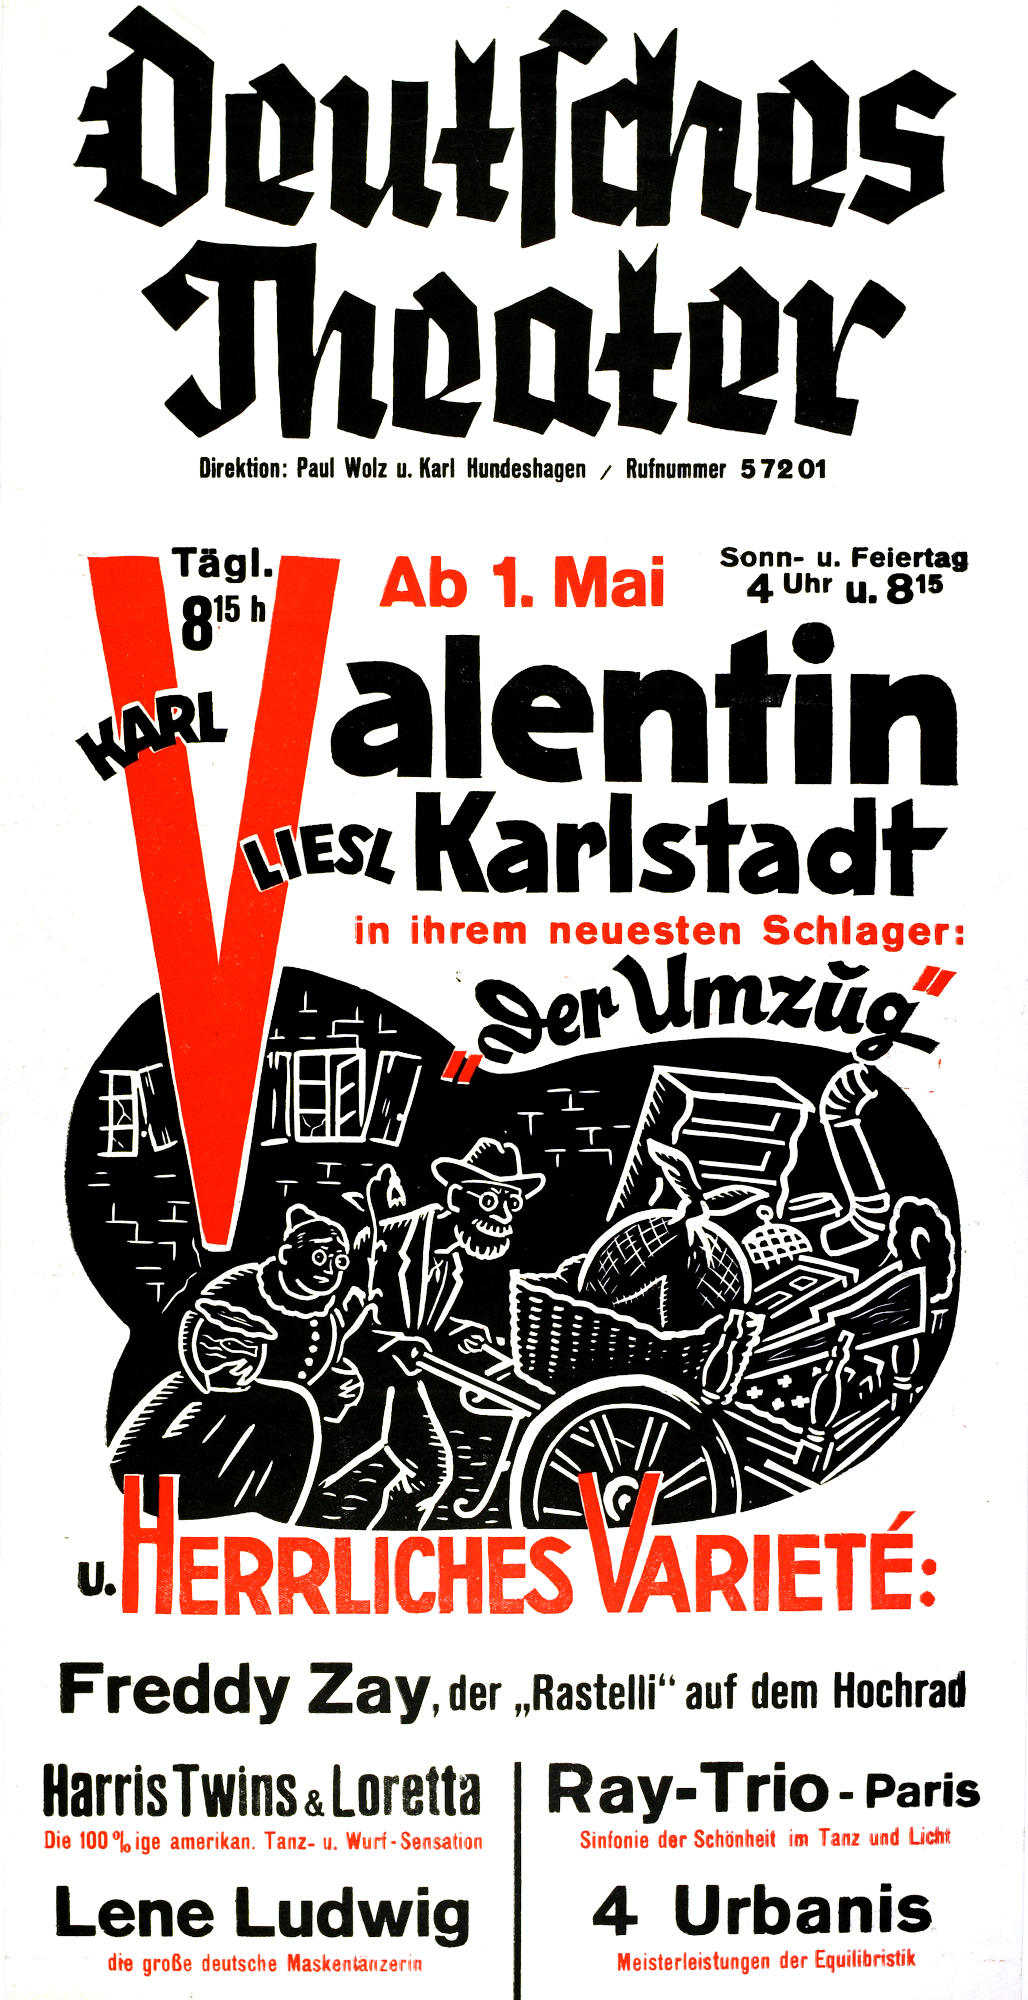 Karl Valentin, Liesl Karlstadt, Karl Valentin, Liesl Karlstadt, Der Umzug, 1938